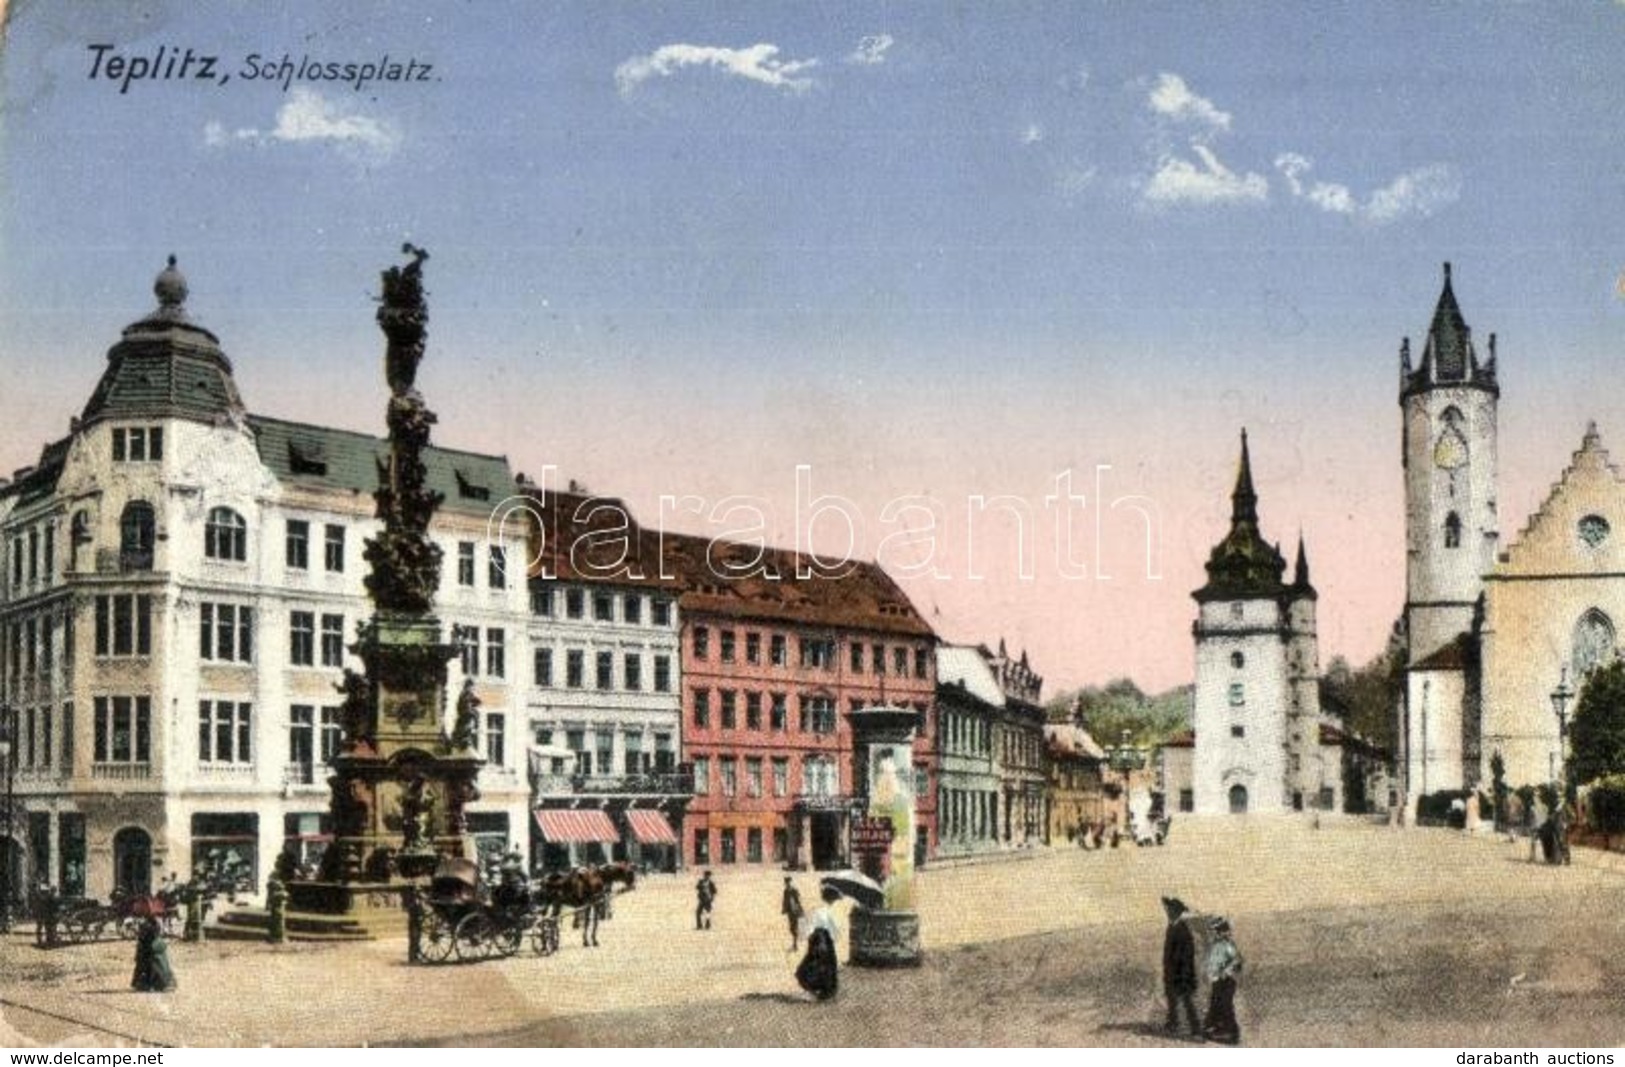 T2/T3 Teplice, Teplitz; Schlossplatz / Palace Square, Monument (EK) - Non Classés